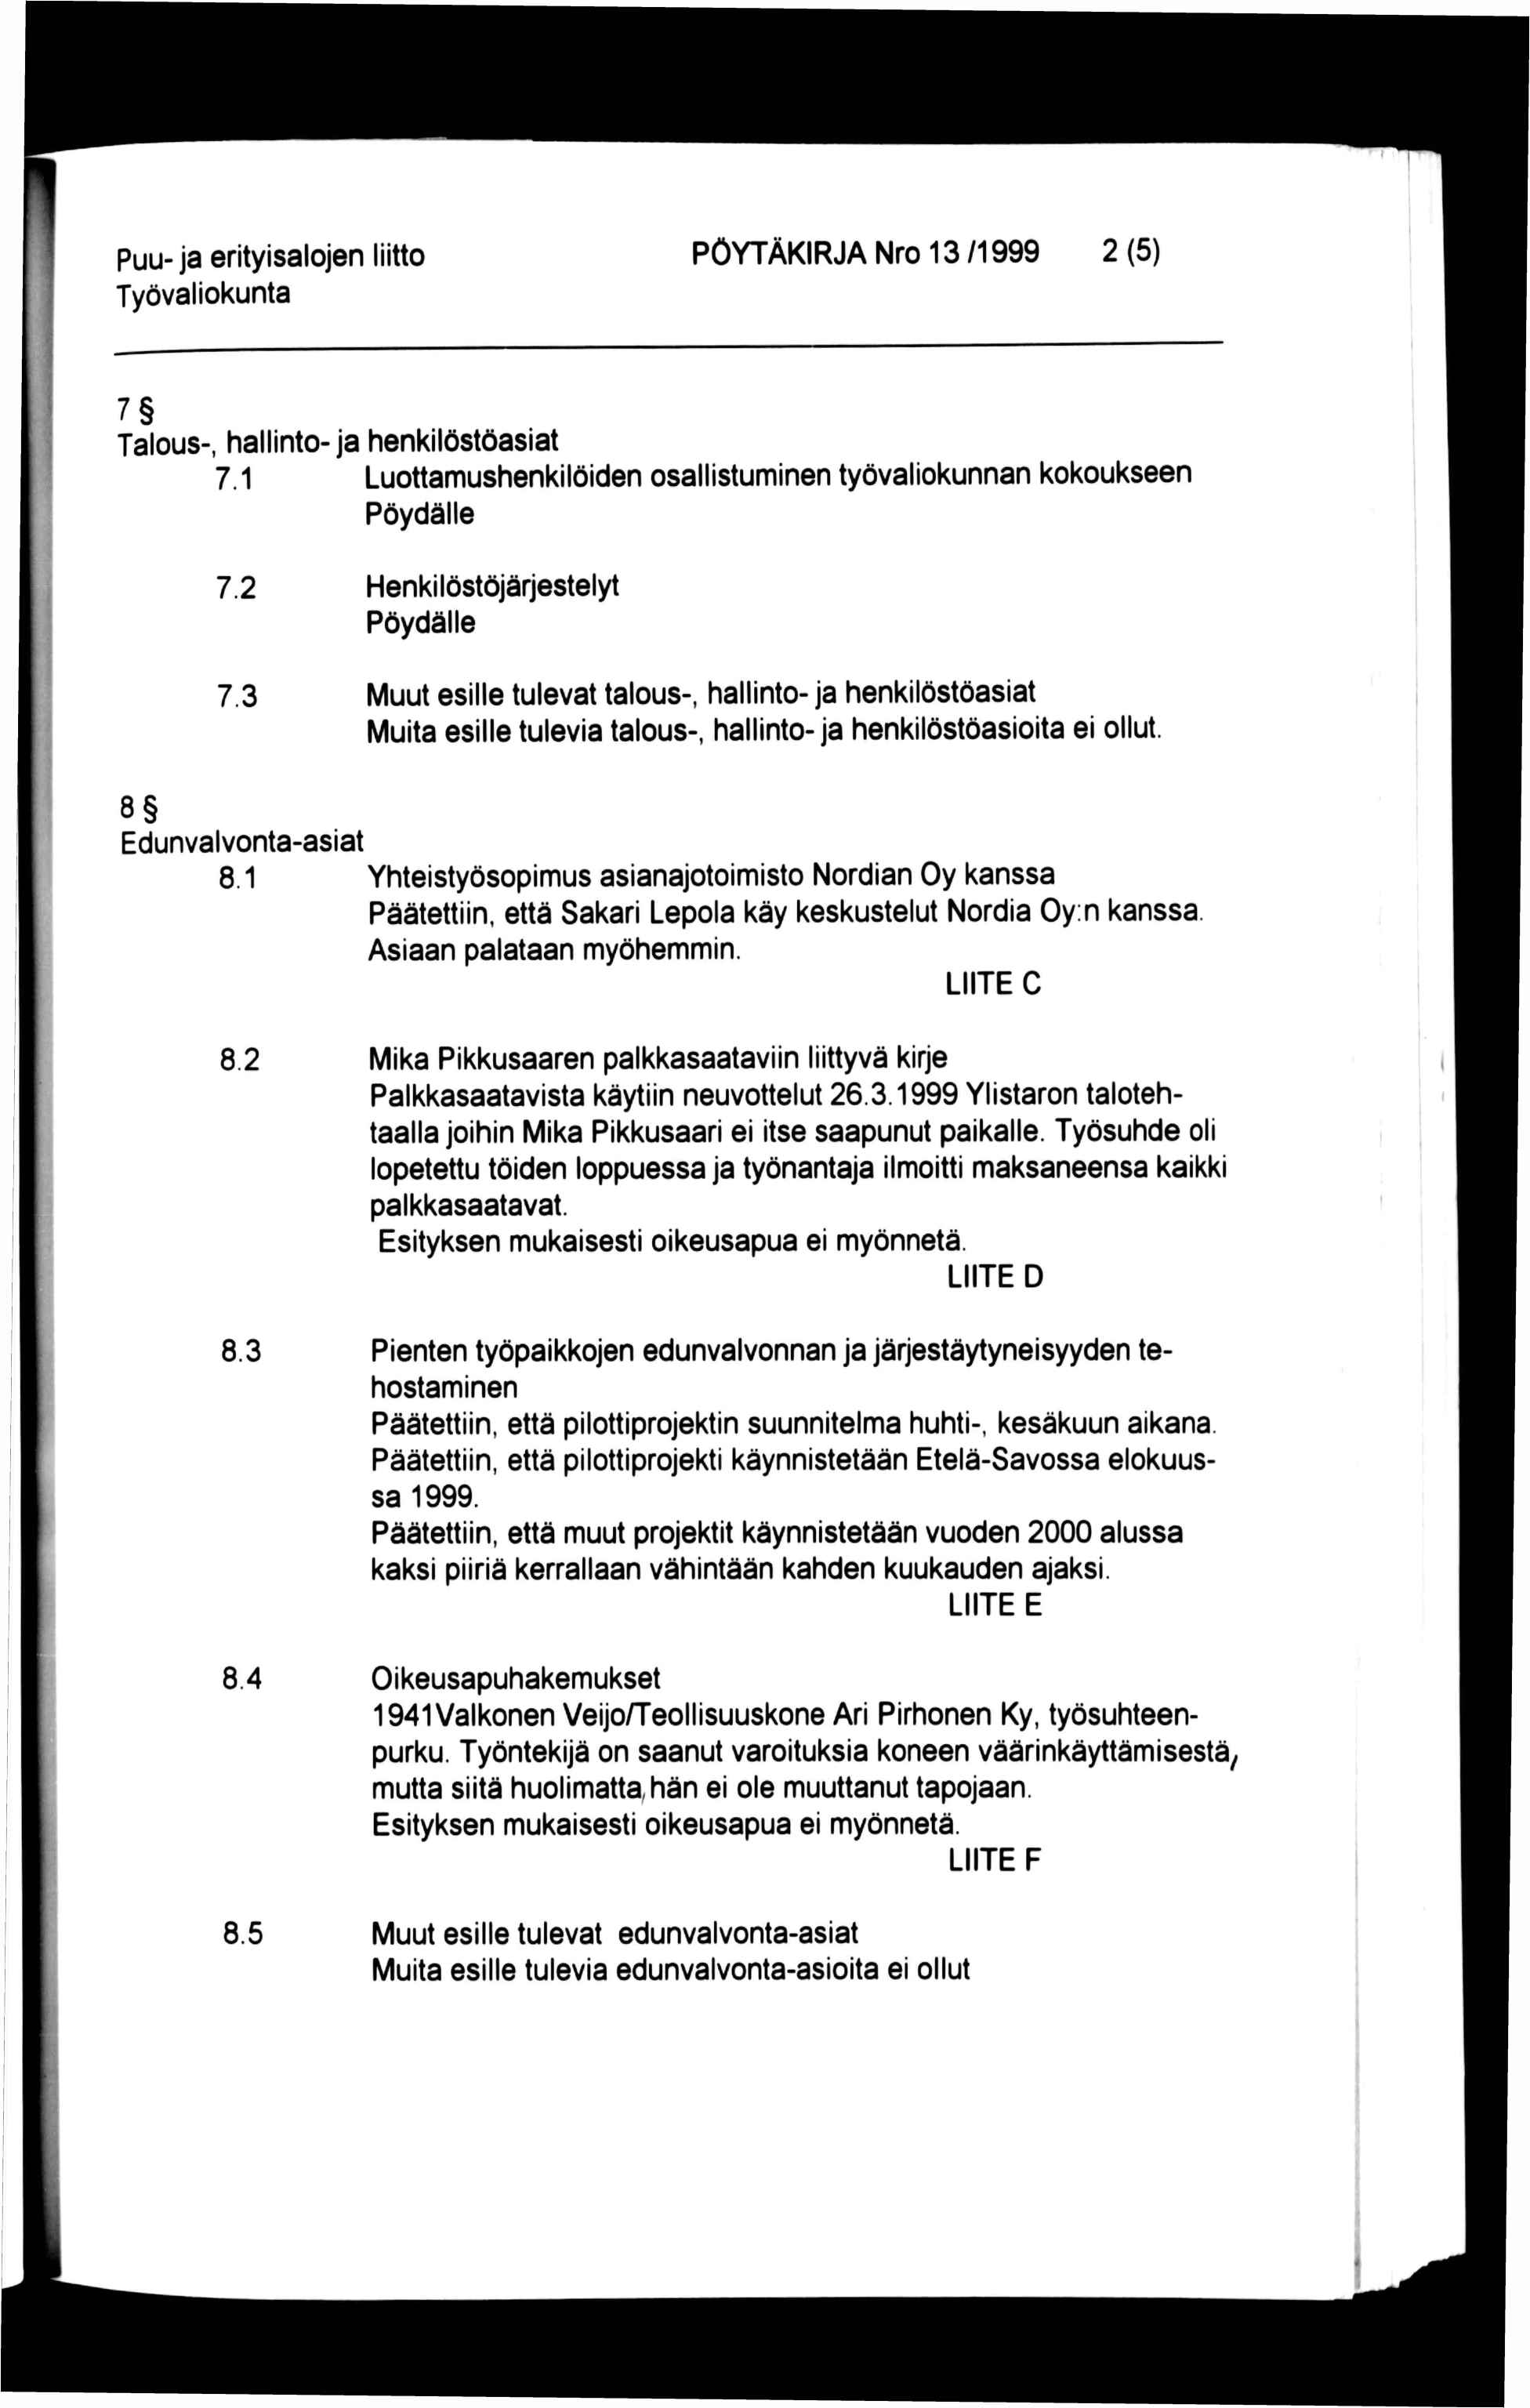 Puu-ja erityisalojen liitto PÖYTÄKIRJA Nro 13 /1999 2 (5) 7 Talous-, hallinto- ja henkilöstöasiat 7.1 Luottamushenkilöiden osallistuminen työvaliokunnan kokoukseen Pöydälle 7.2 7.